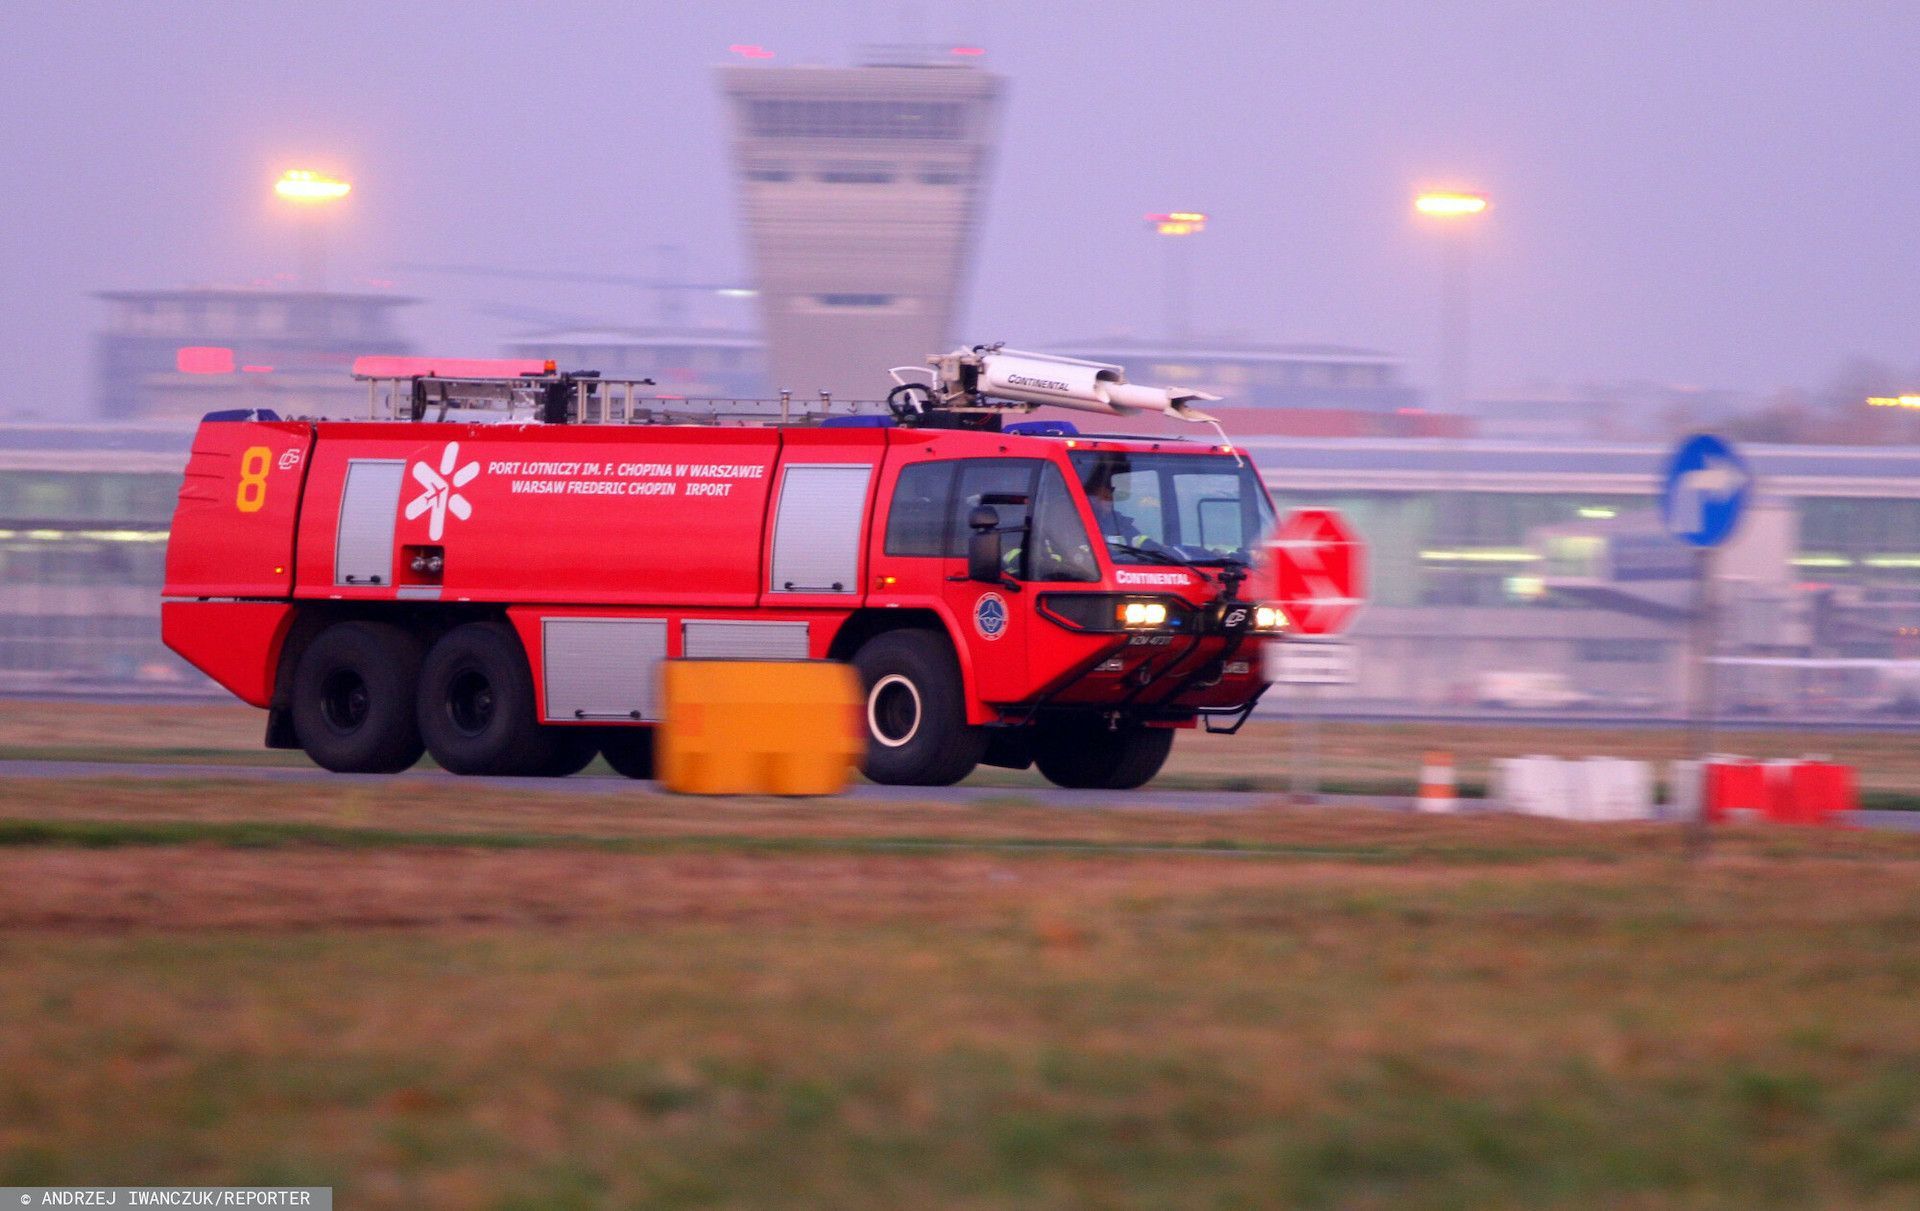 Lotnisko Kraków-Balice: pożar w serwerowni w wieży kontroli lotów, port został zamknięty